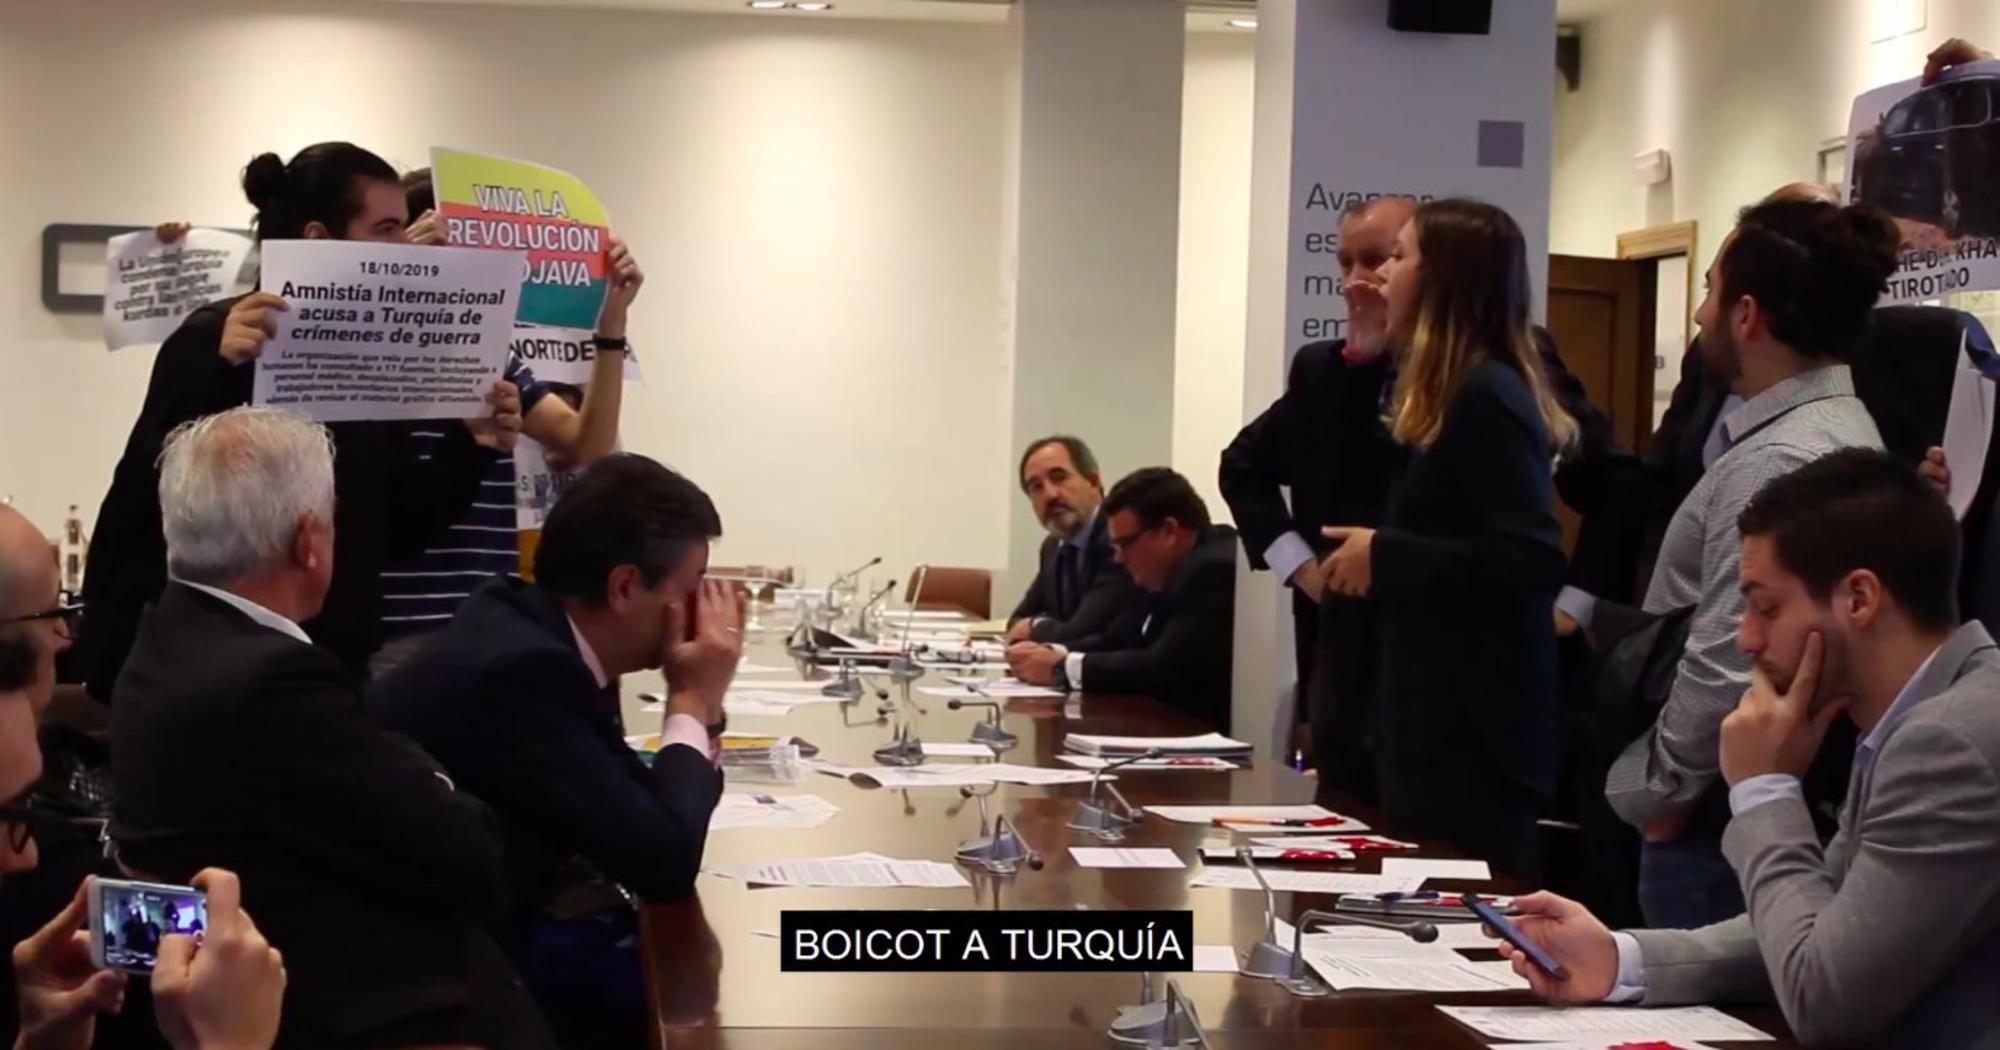 Acción de boicot en el encuentro de empresarios con el embajador de Turquía